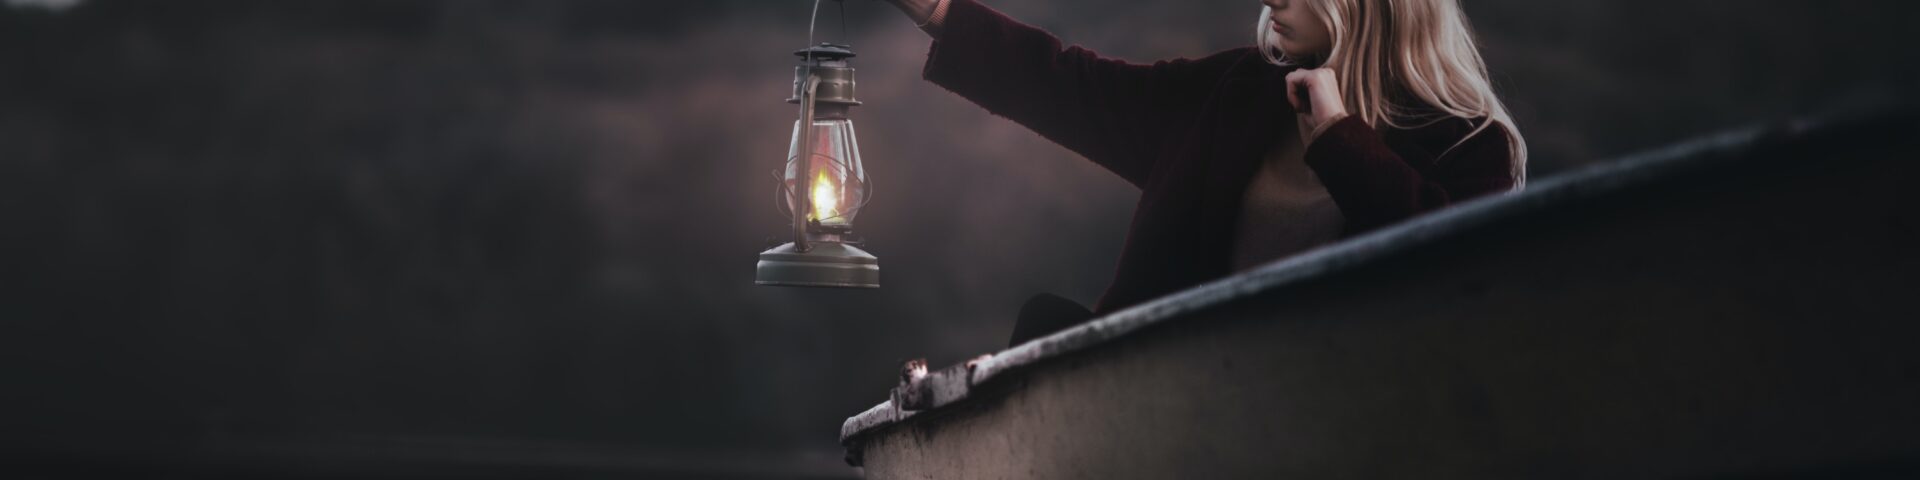 Vrouw alleen in een roeiboot in de schemer met een lamp in haar hand als afbeelding bij een blog over de pensioendip